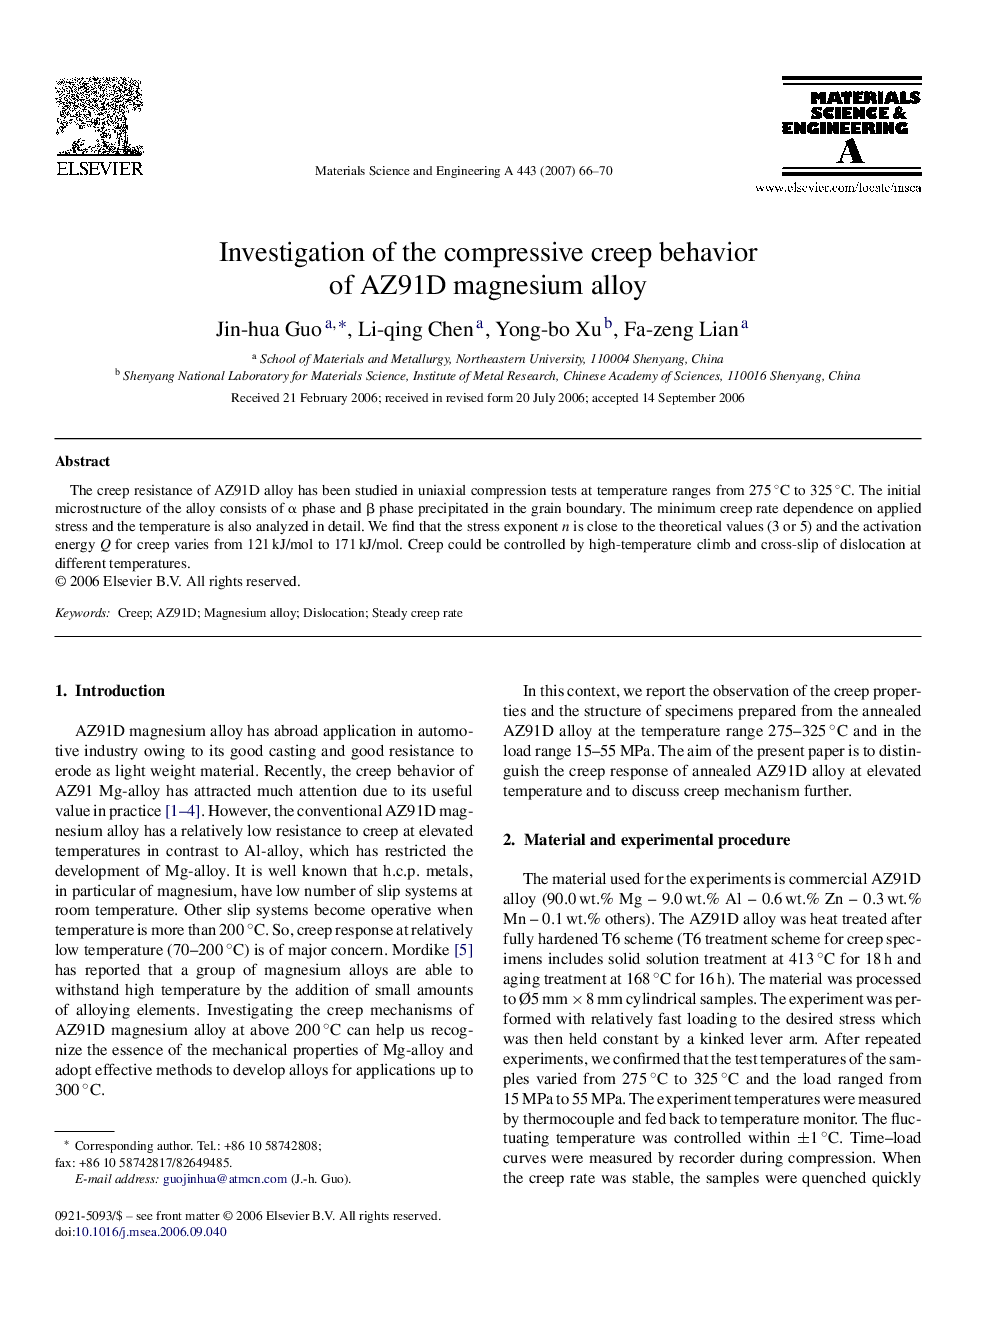 Investigation of the compressive creep behavior of AZ91D magnesium alloy